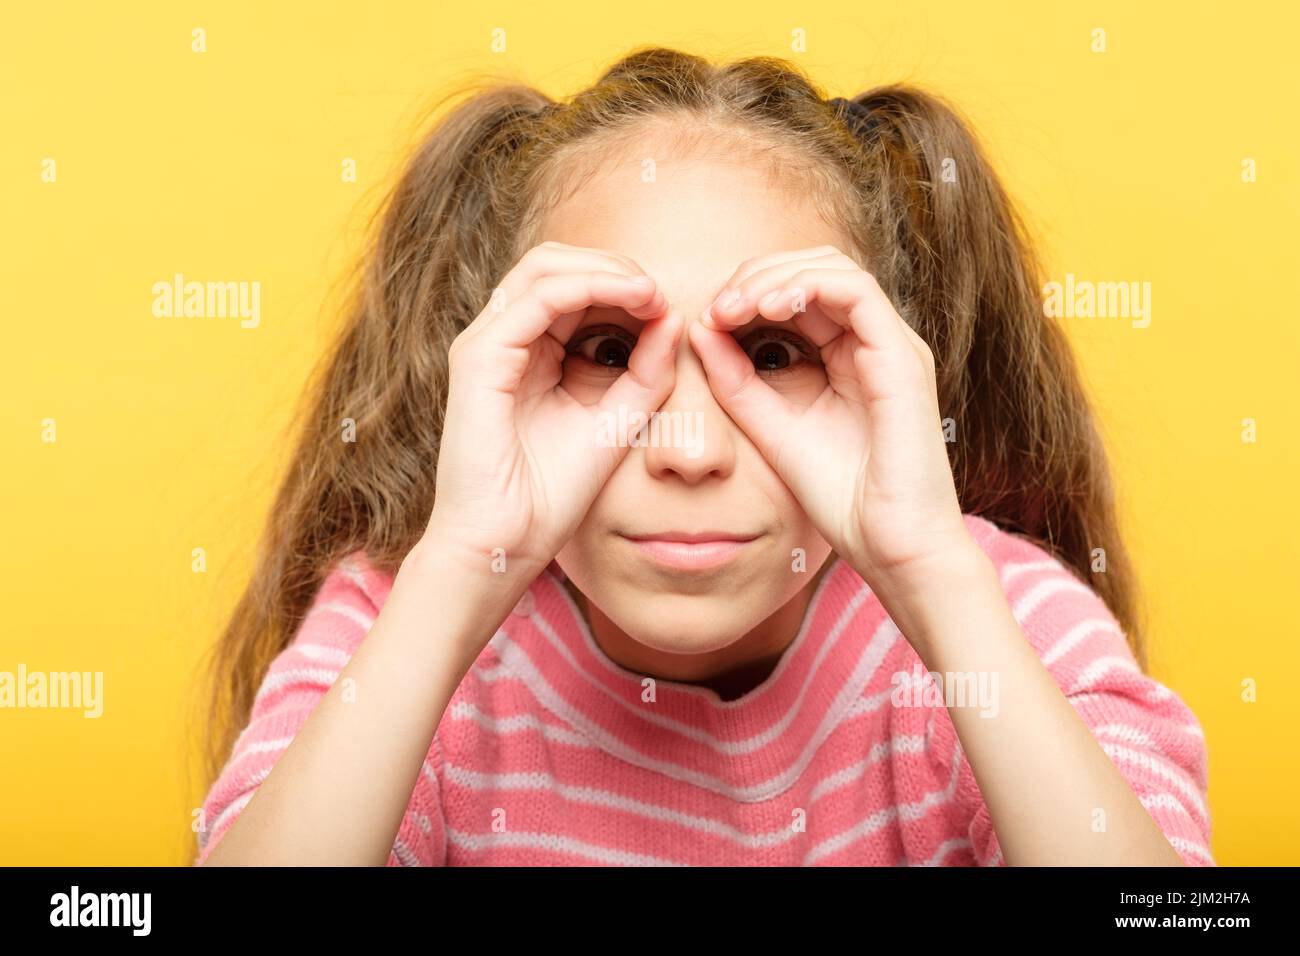 girl pretending look binoculars hands search Stock Photo